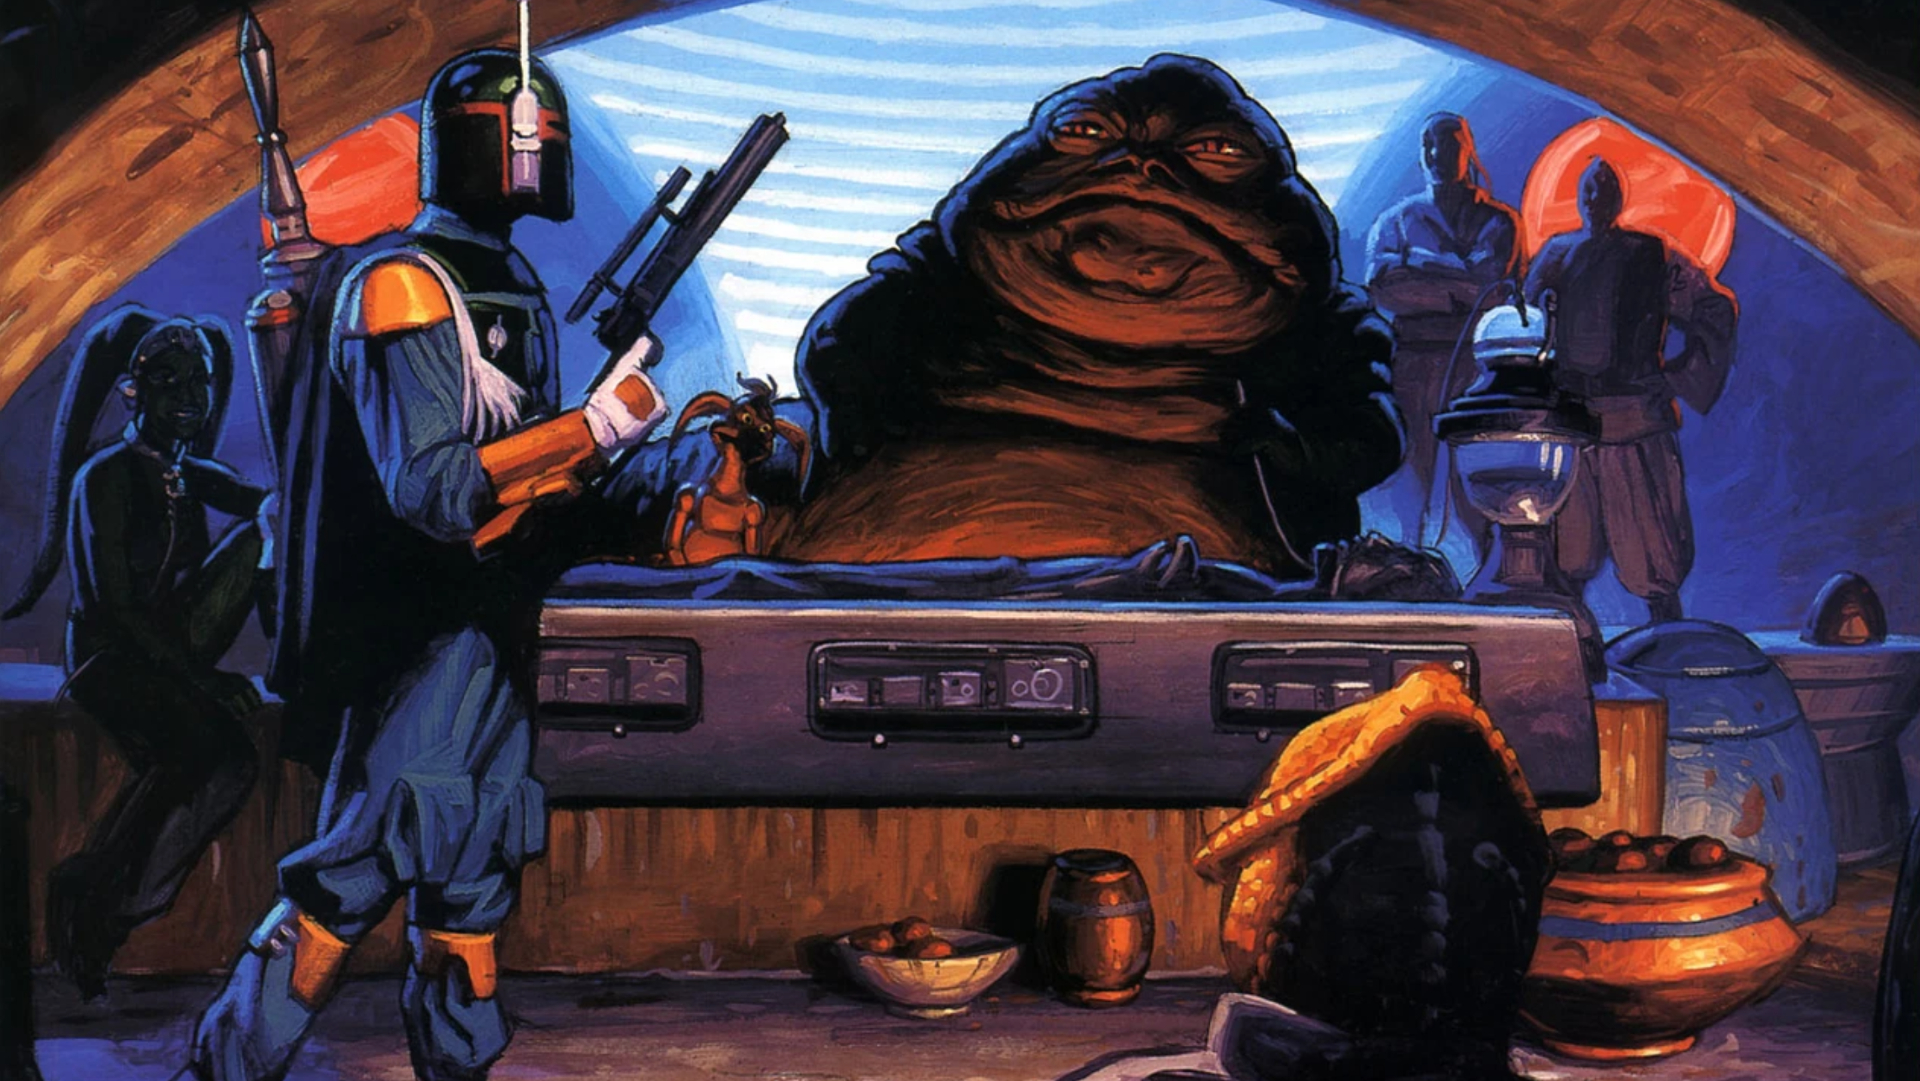 Boba Fett entregando Han Solo para Jabba em seu palácio.